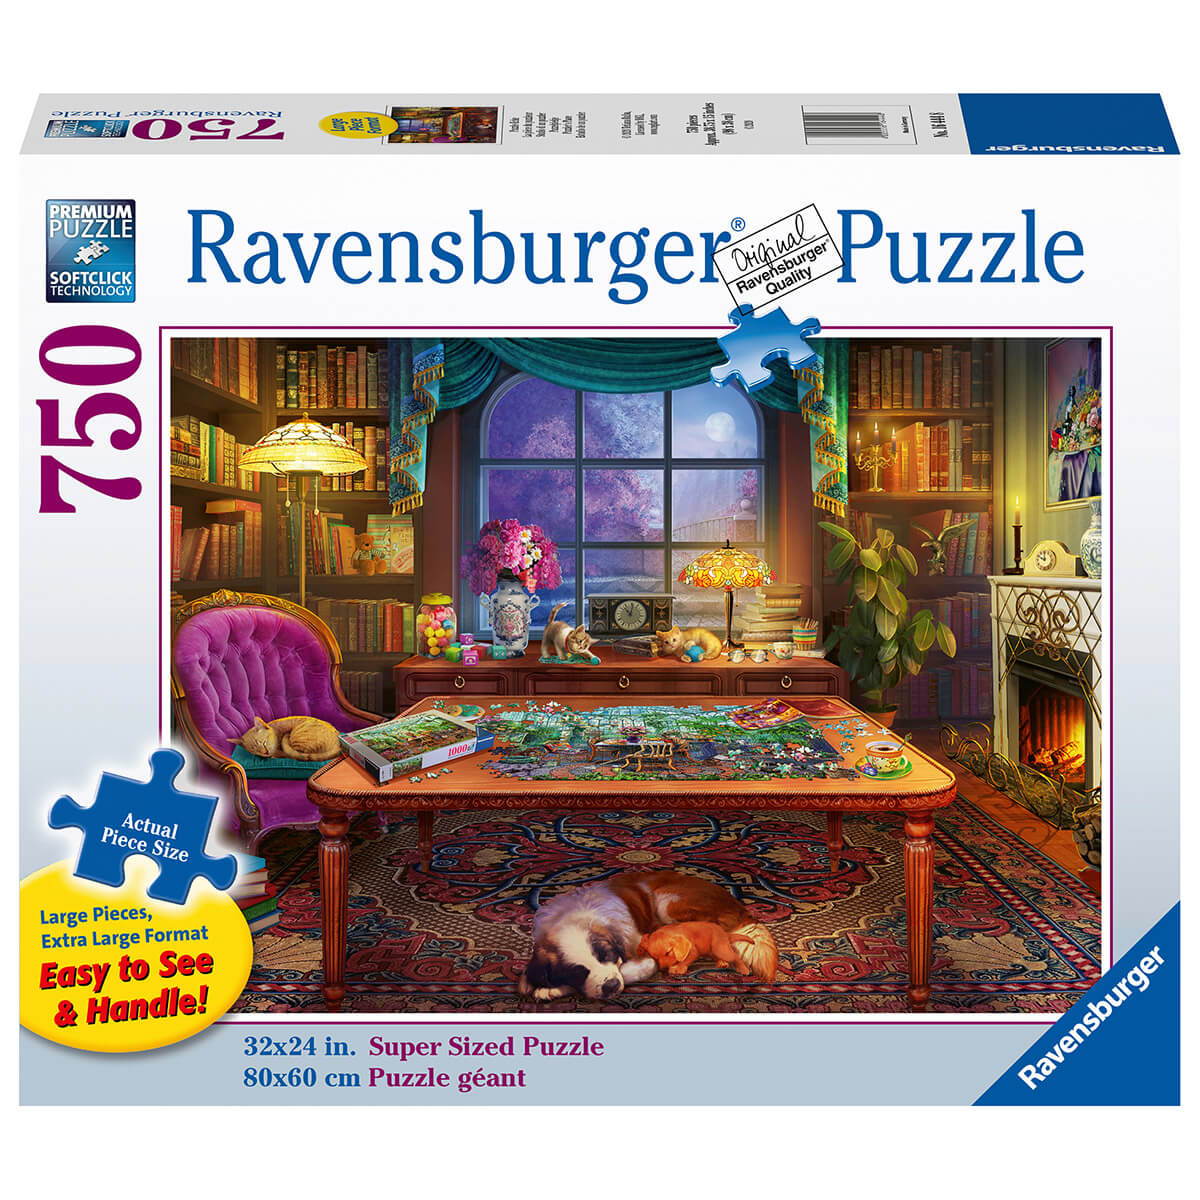 Ravensburger Puzzler's Place 750 Piece Large Format  Puzzle